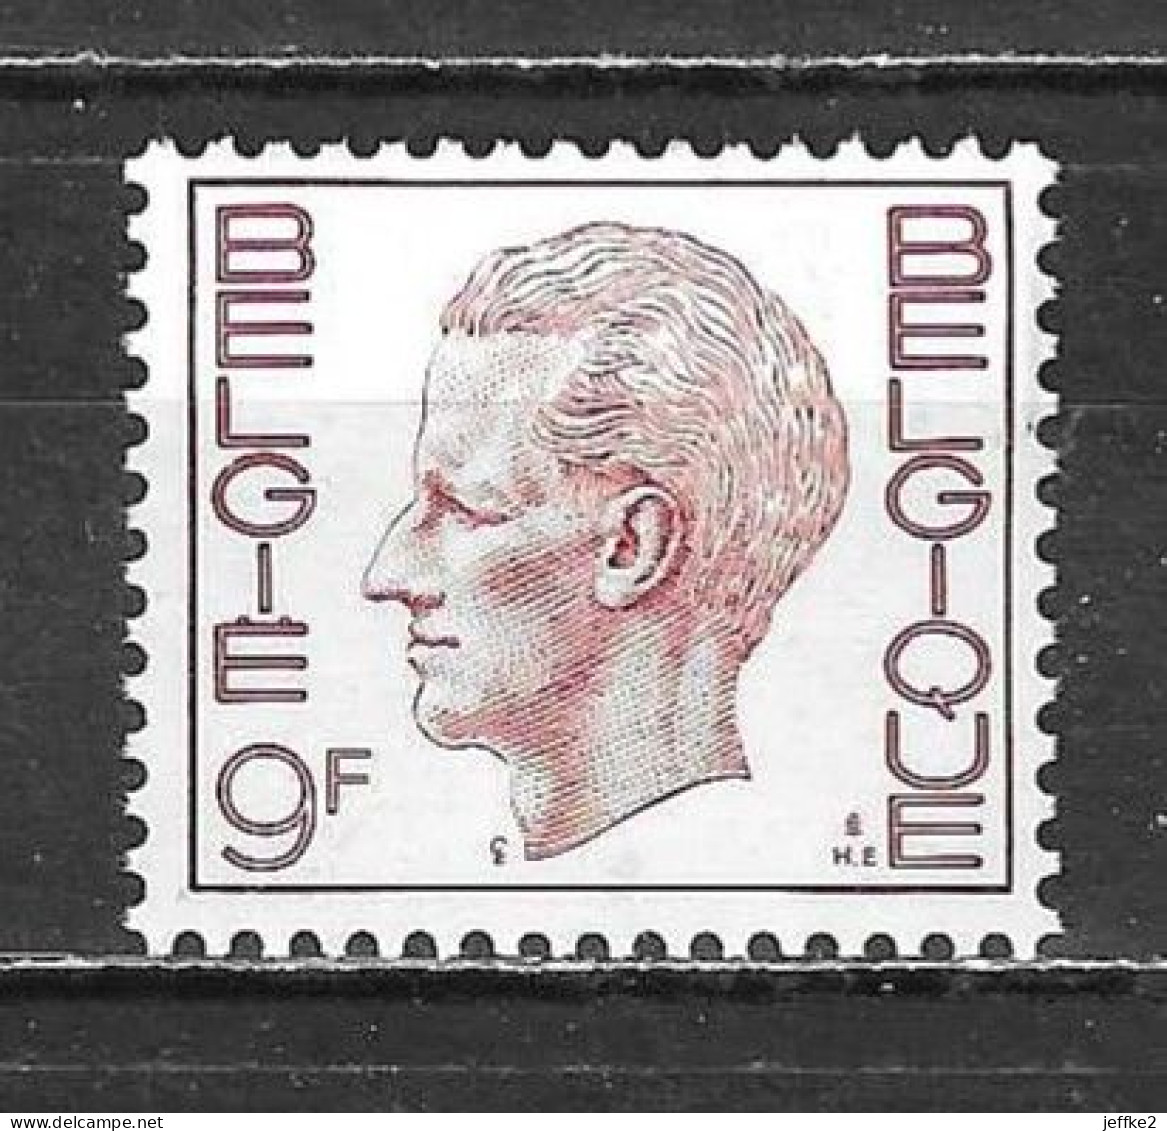 R69**  Baudouin Elström - Bonne Valeur - MNH** - LOOK!!!! - Coil Stamps